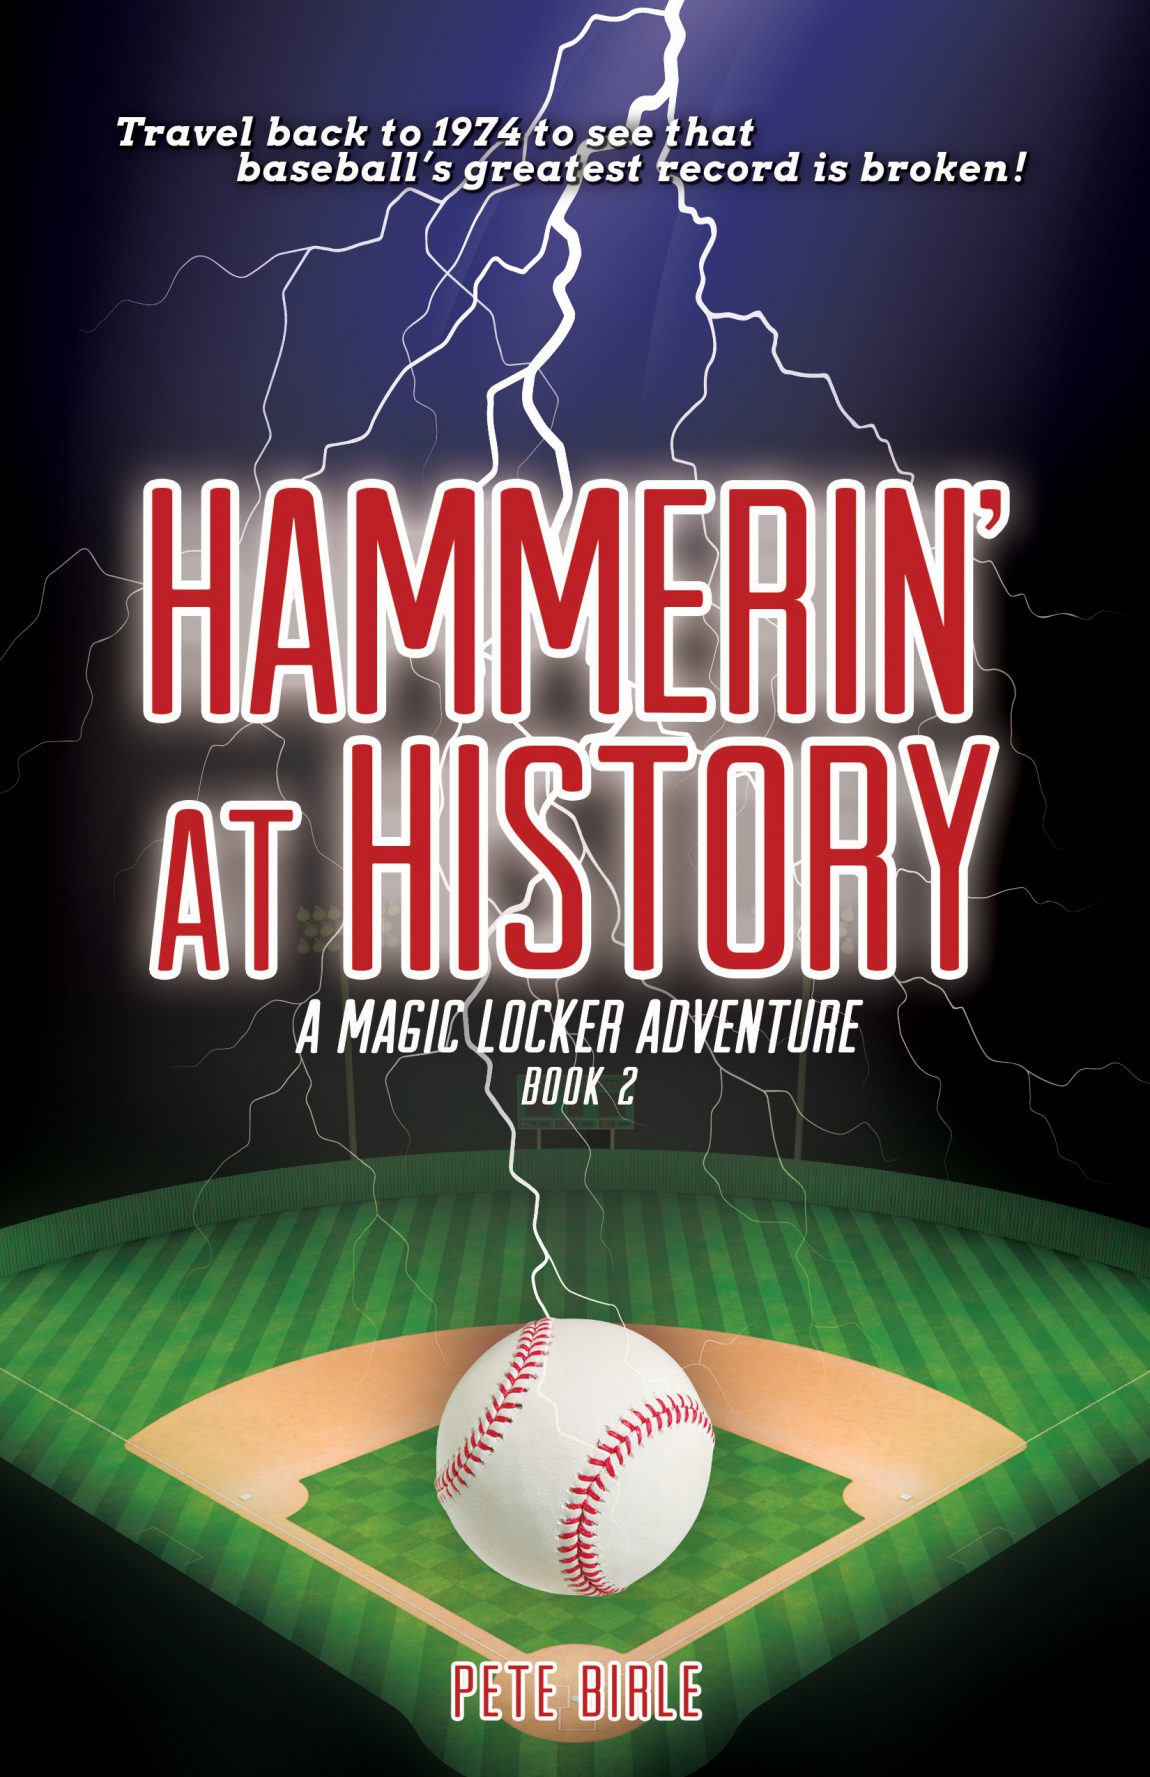 Hammerin-At-History-1.jpg